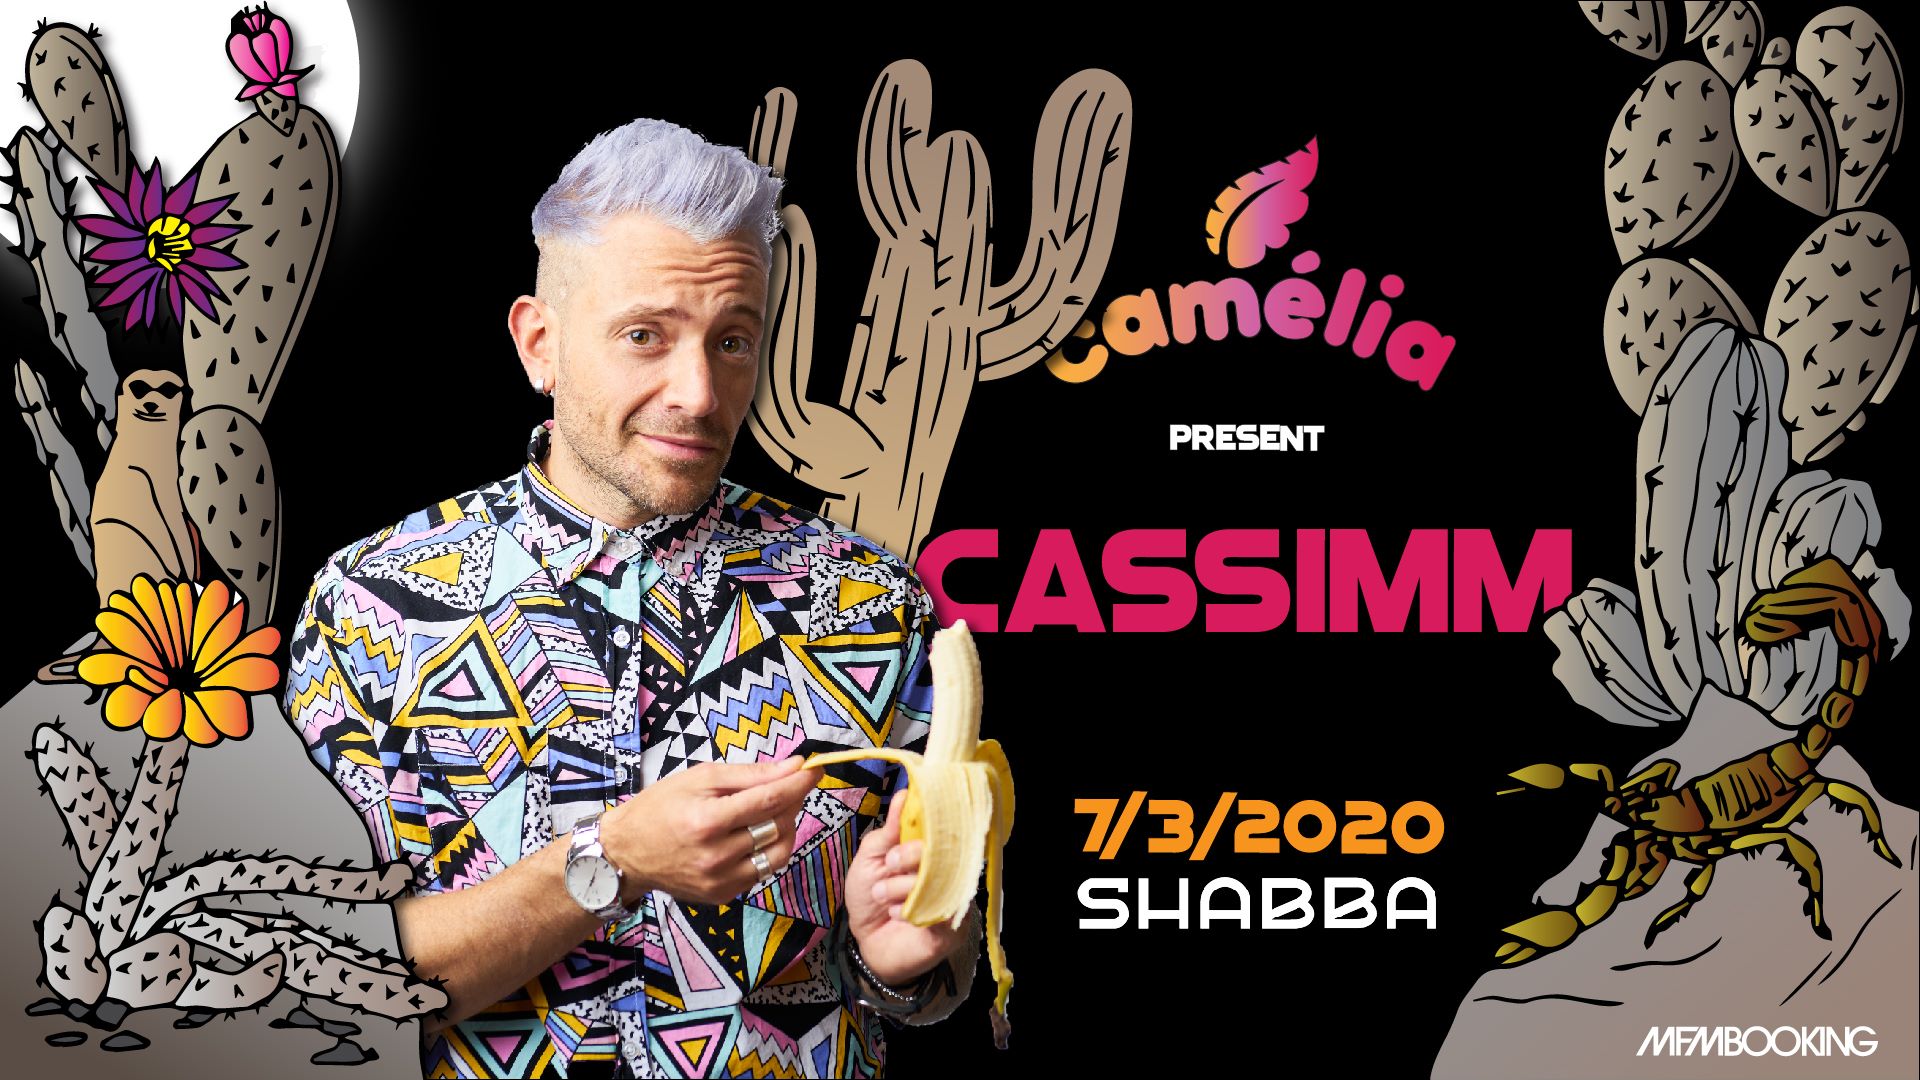 Camelia presents Cassimm @ Shabba